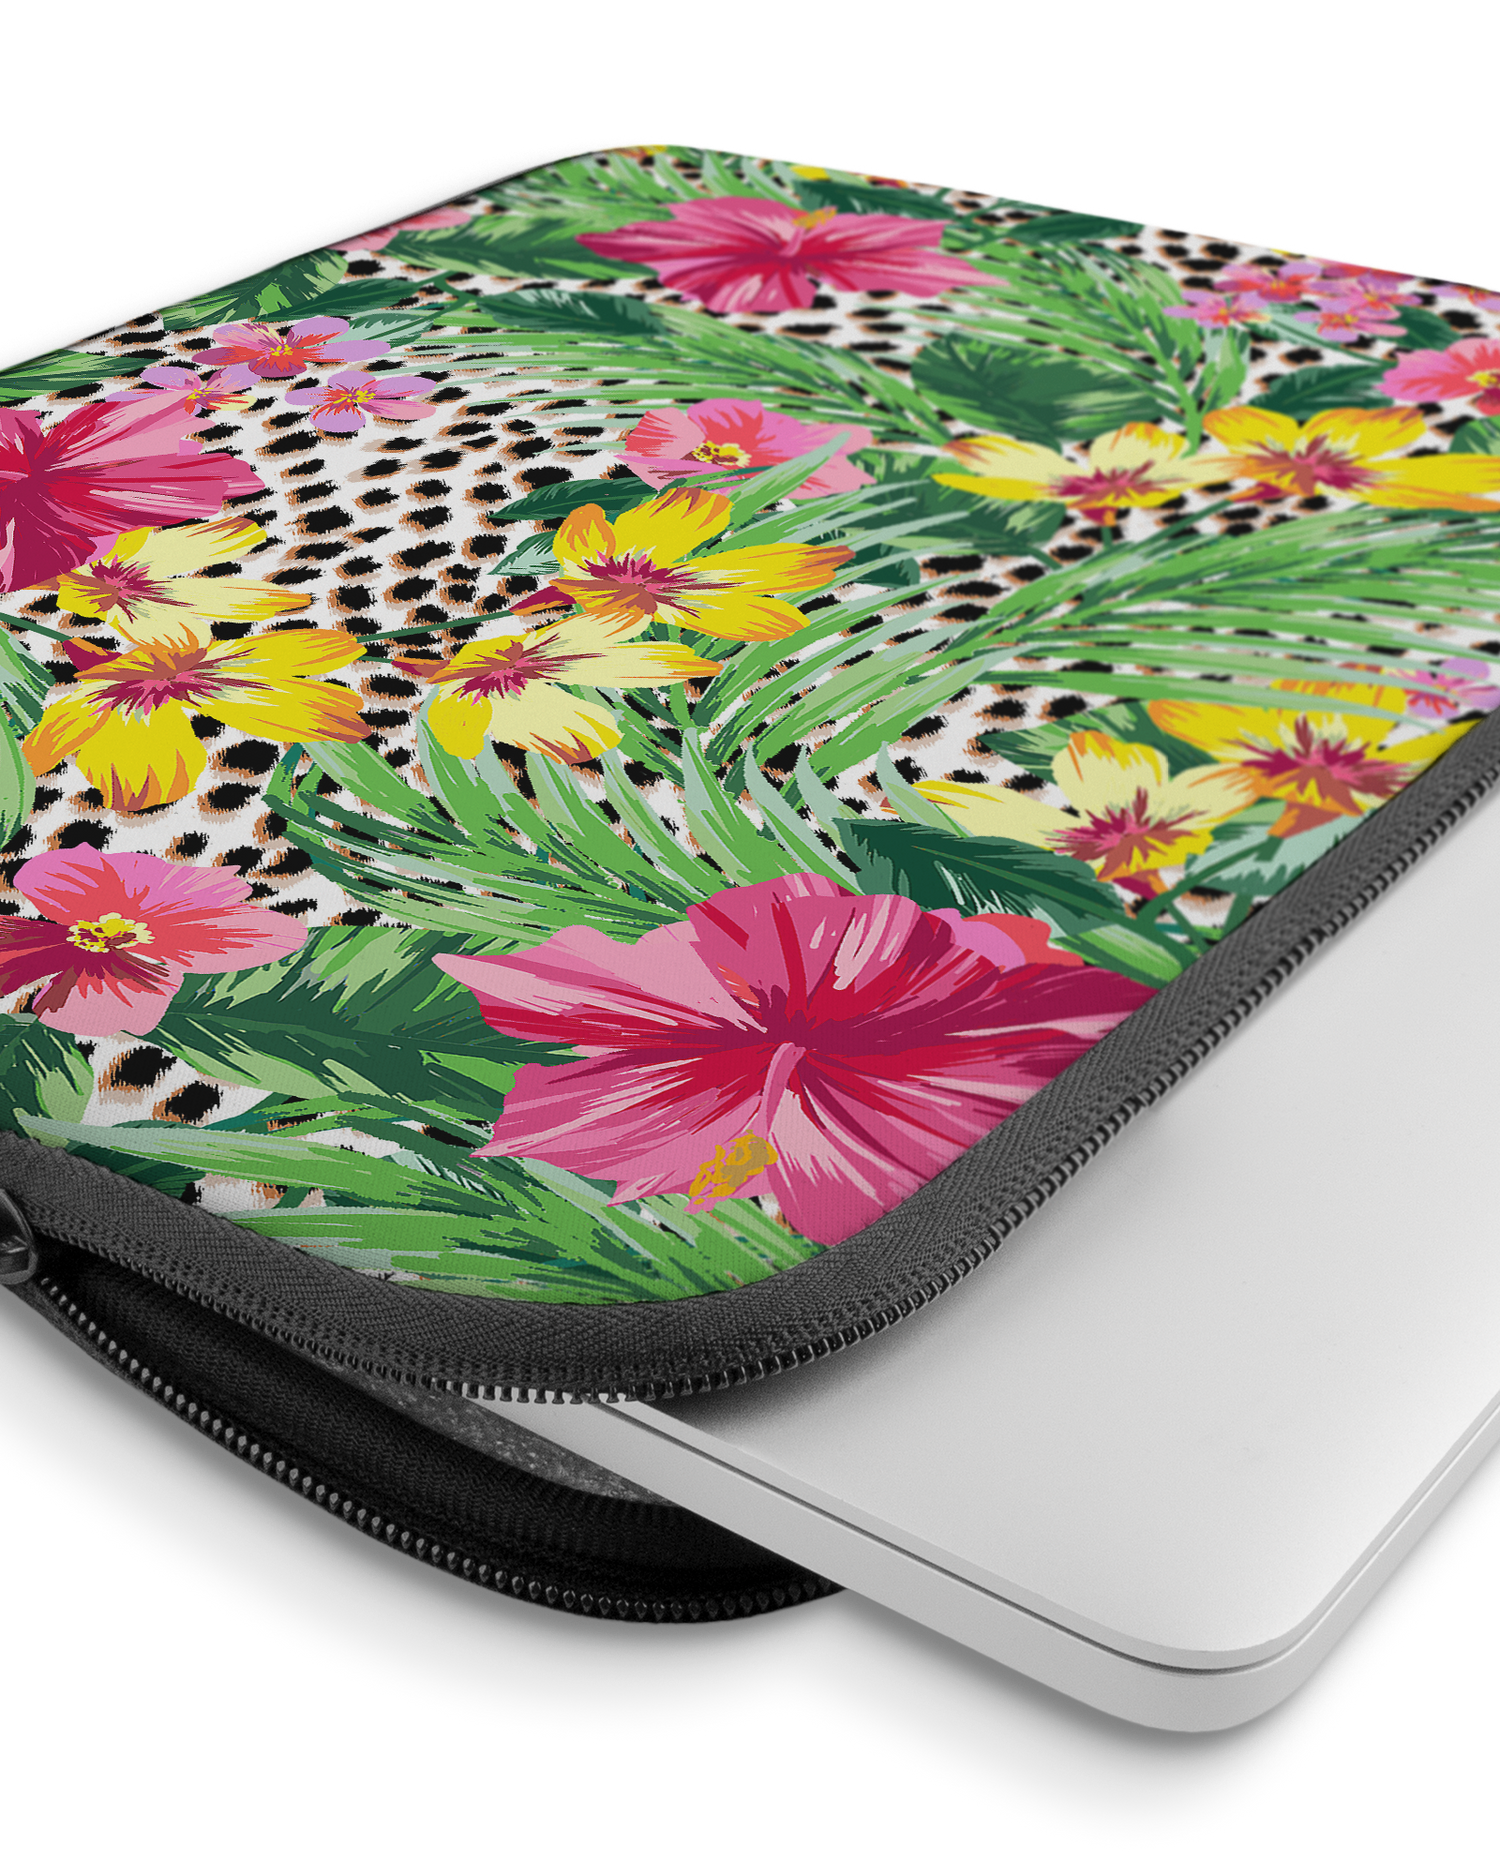 Tropical Cheetah Laptophülle 15 Zoll mit Gerät im Inneren